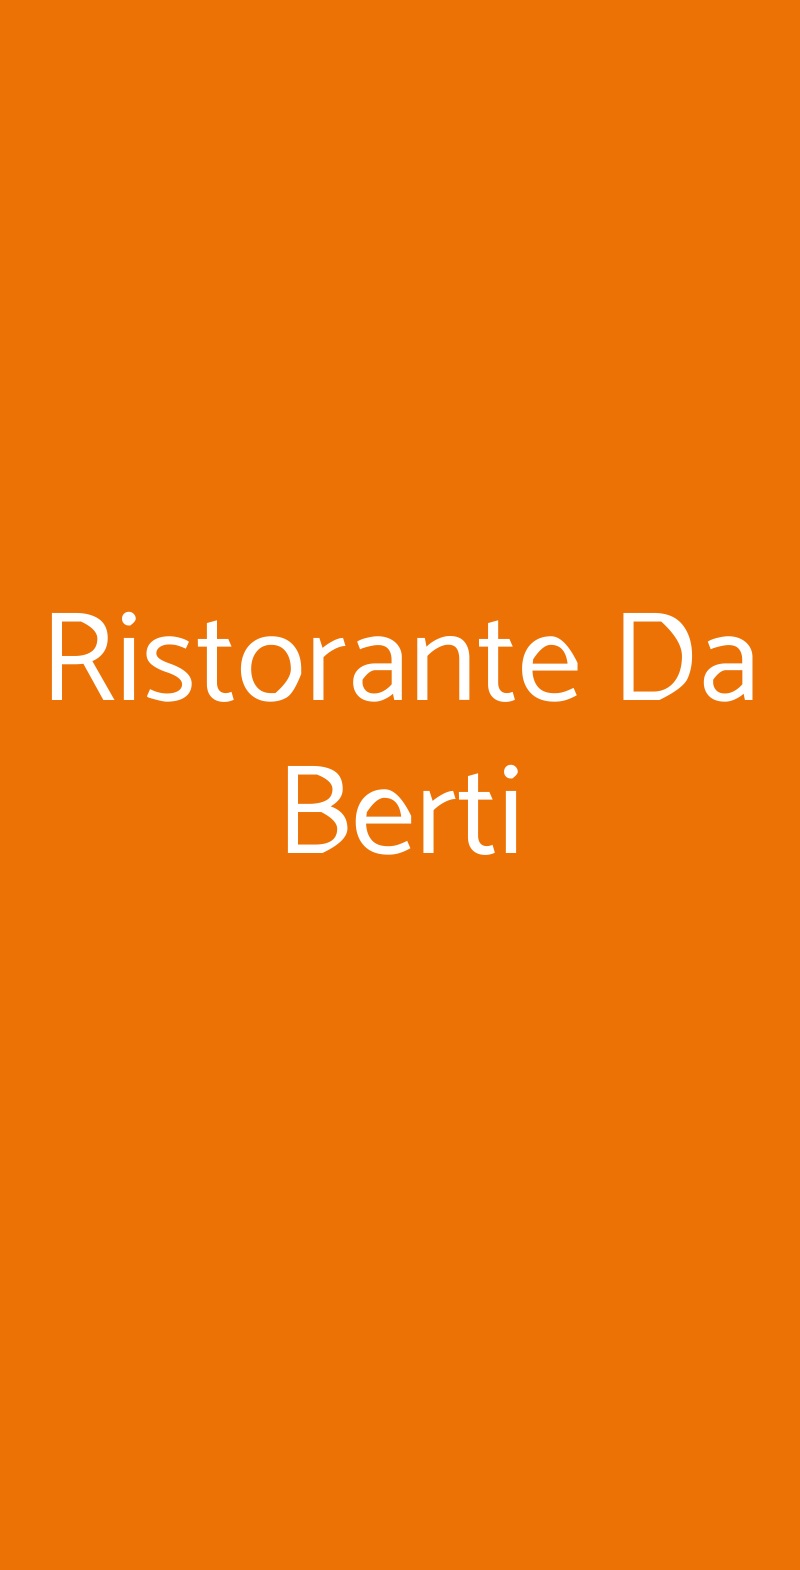 Ristorante Da Berti Milano menù 1 pagina